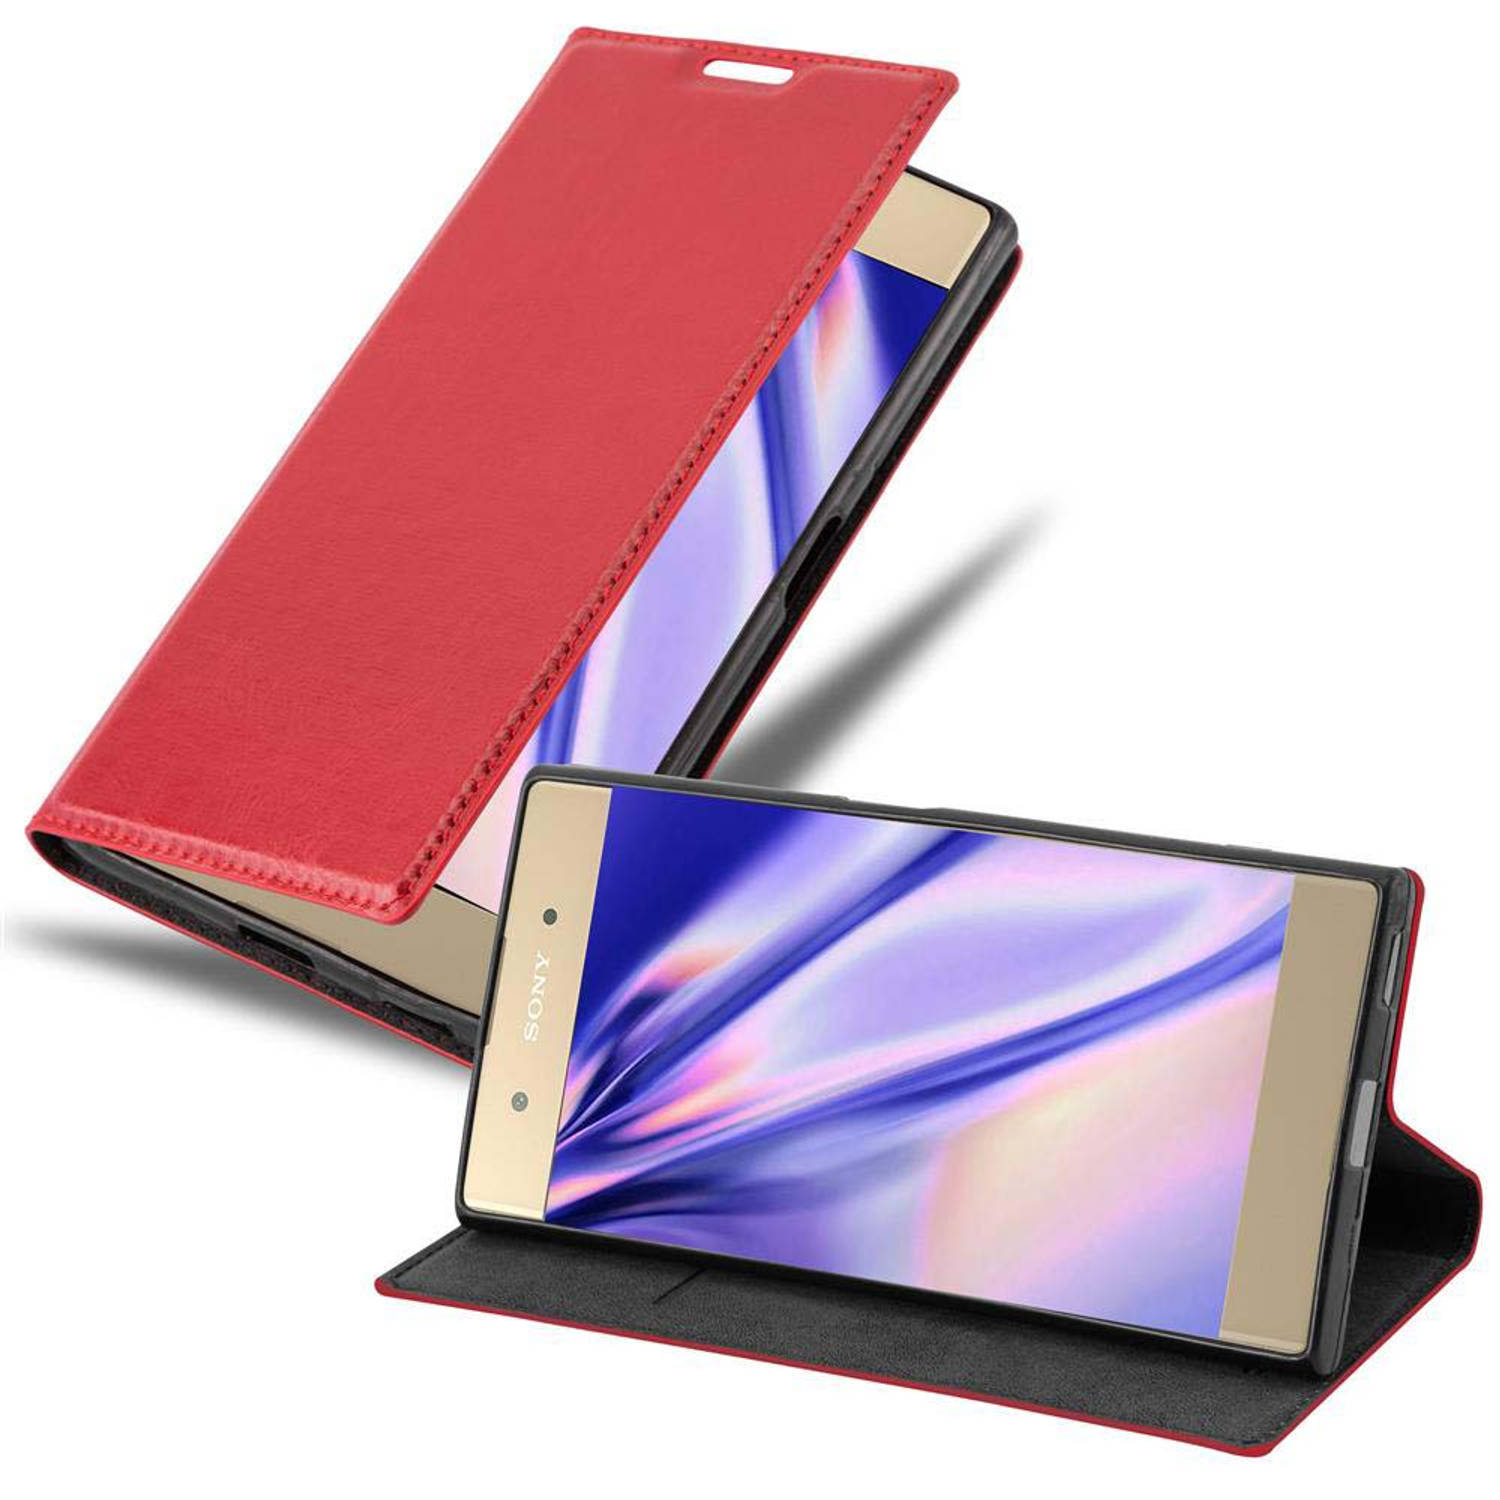 Cadorabo Hoesje voor Sony Xperia XA1 PLUS in APPEL ROOD - Beschermend etui met magnetische sluiting